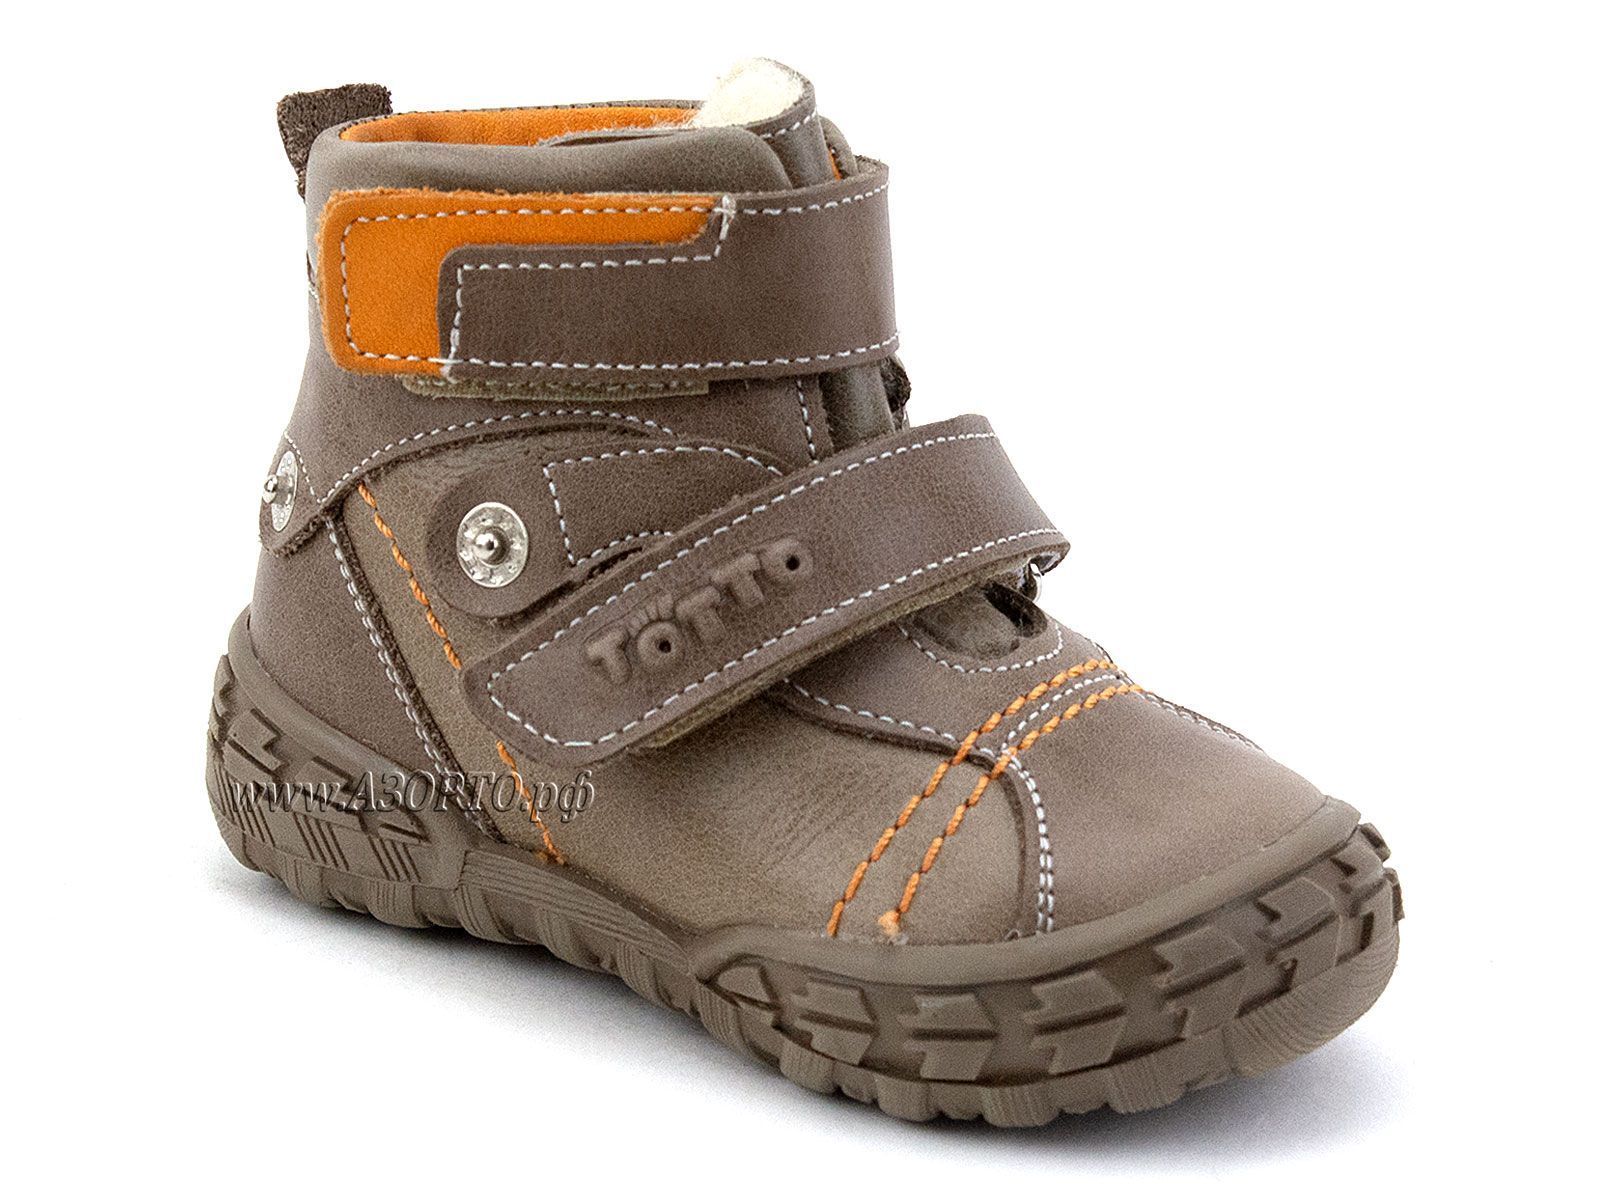 248-134,88,85 Тотто (Totto), ботинки демисезонные утепленные, байка, коричневый, бежевый, оранжевый, кожа.